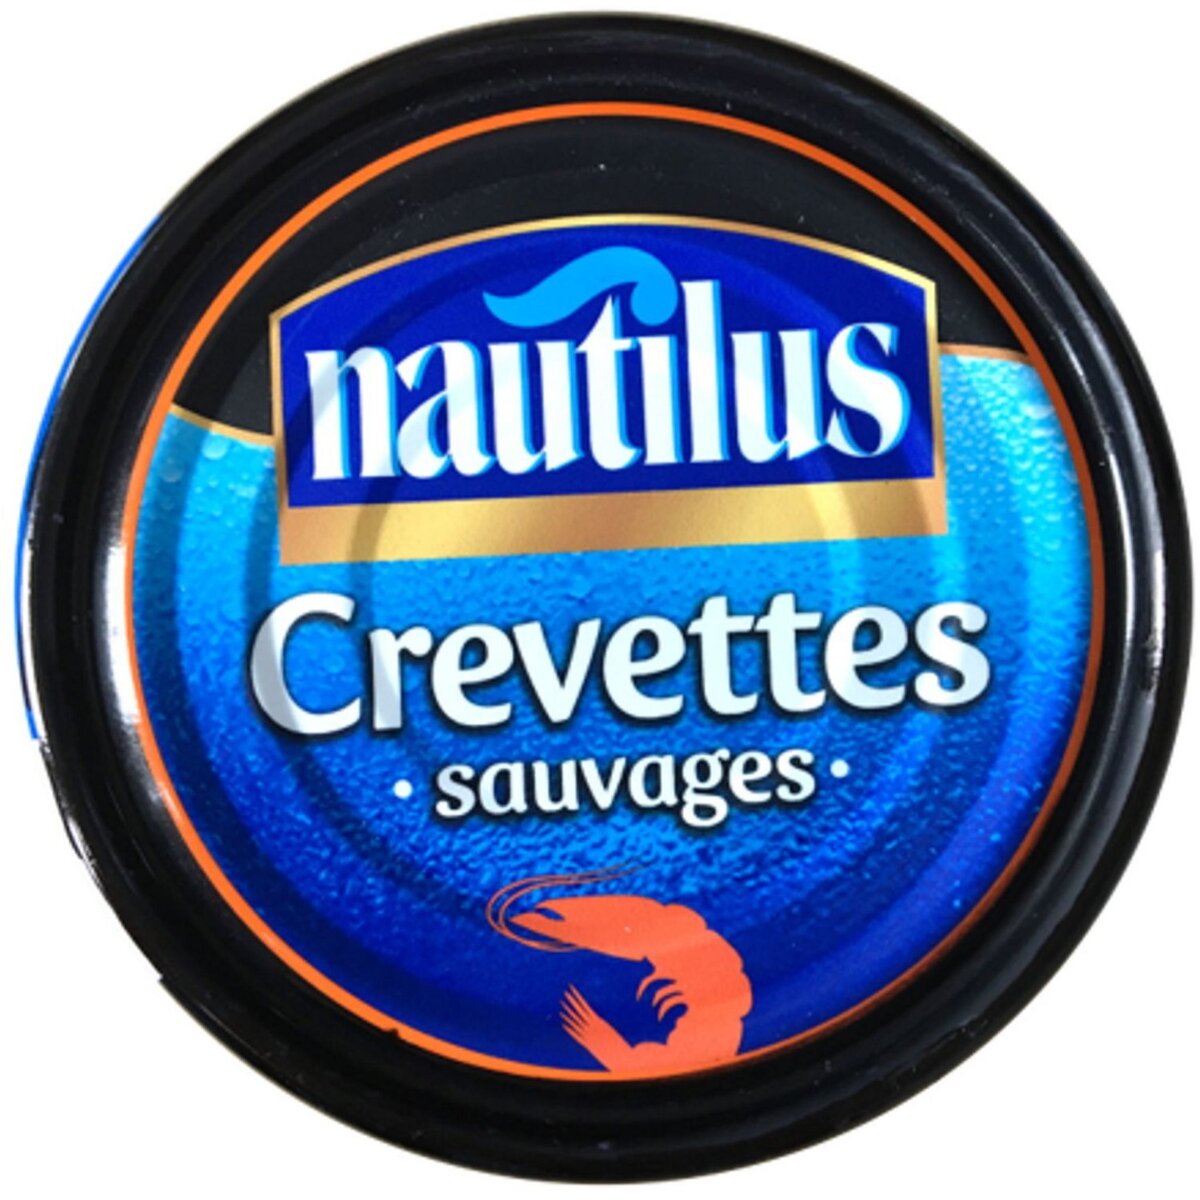 NAUTILUS Crevettes sauvages 105g